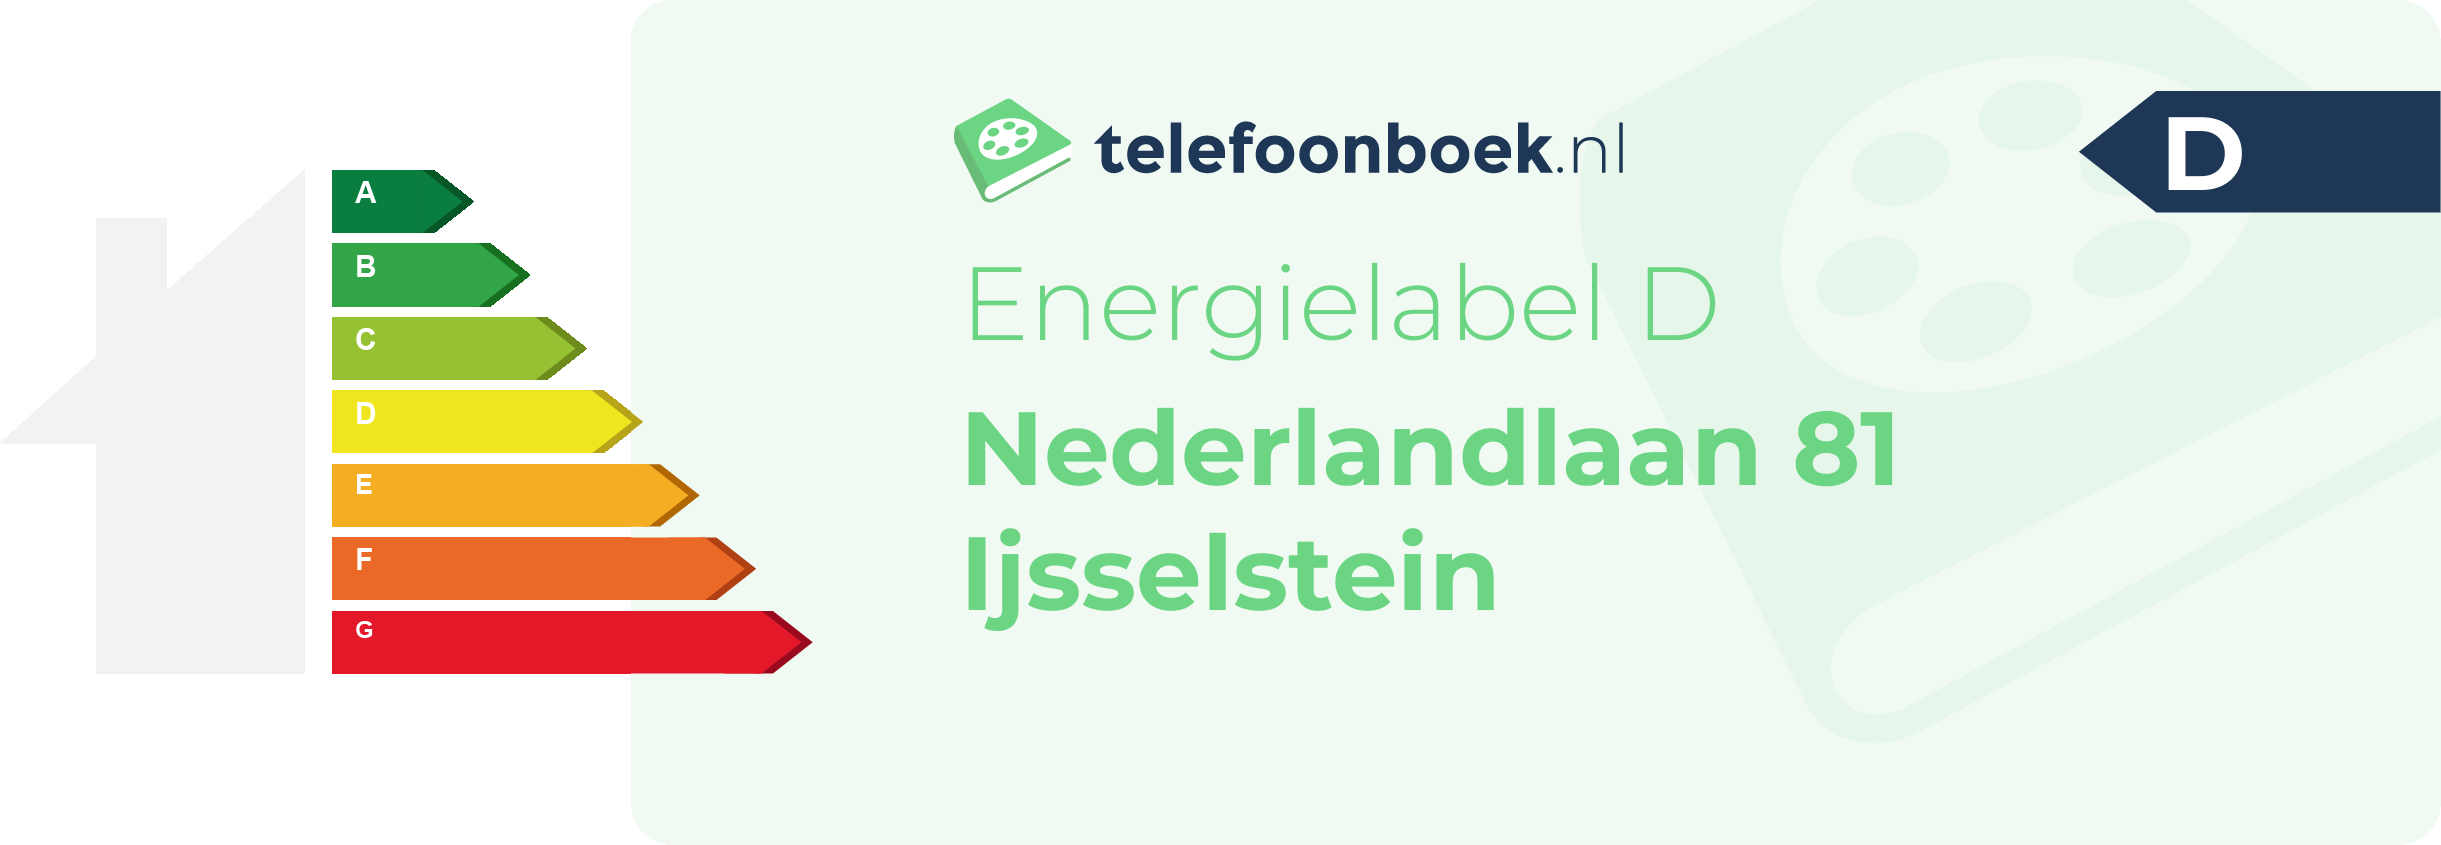 Energielabel Nederlandlaan 81 Ijsselstein